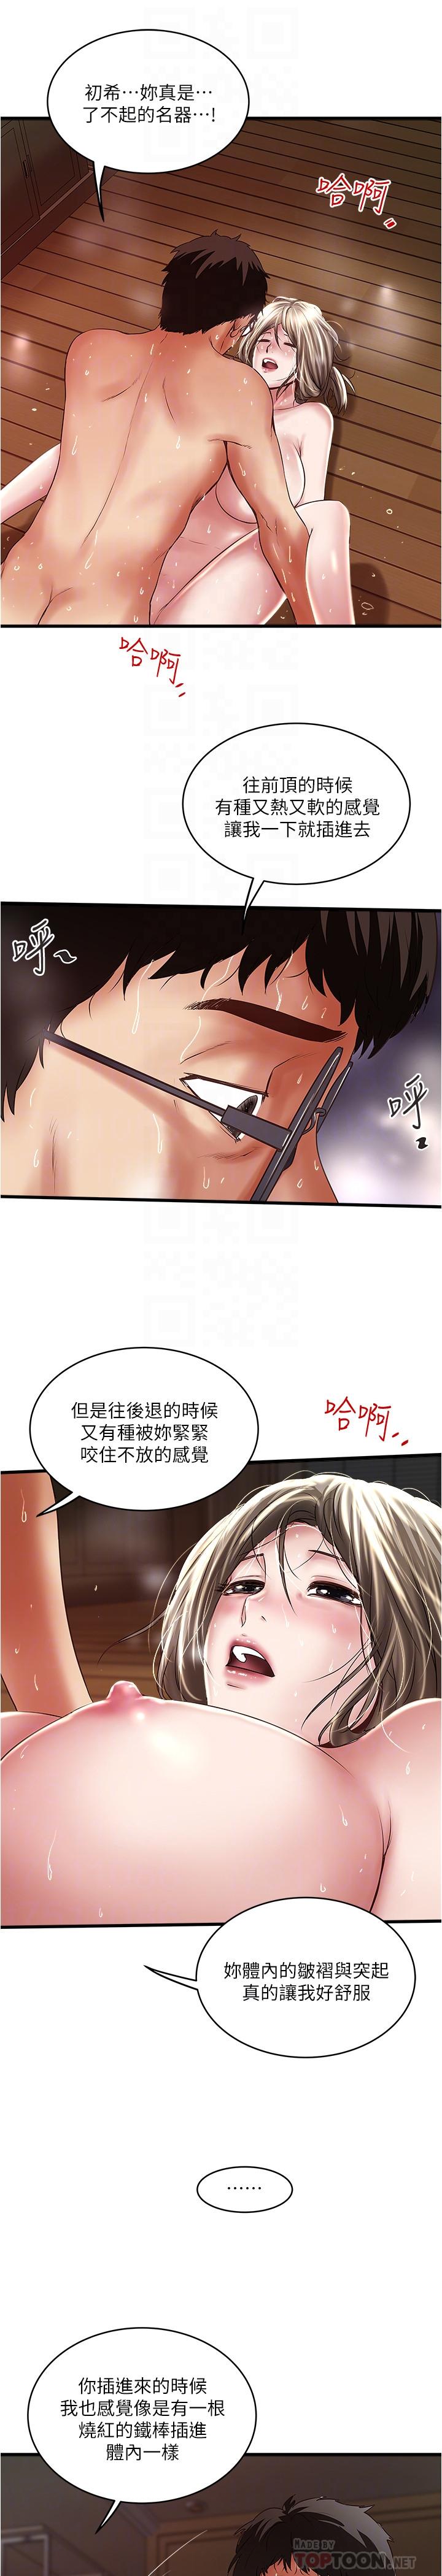 韩国污漫画 下女,初希 第70话-像是大扫除般的淫乱吸允 10